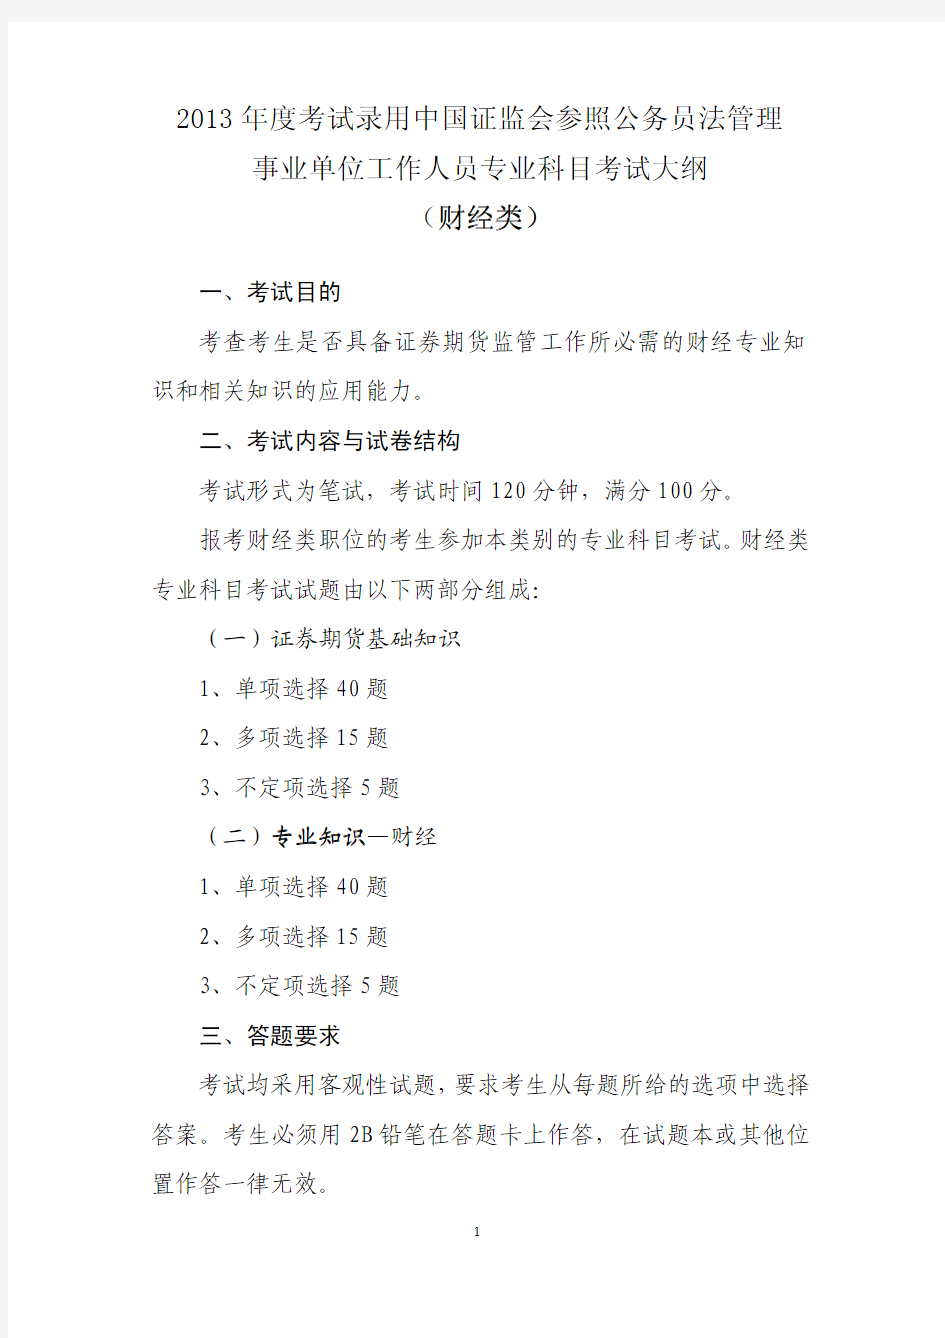 2013年度考试录用中国证监会参照公务员法管理事业单位工作人员专业科目考试大纲(财经类)